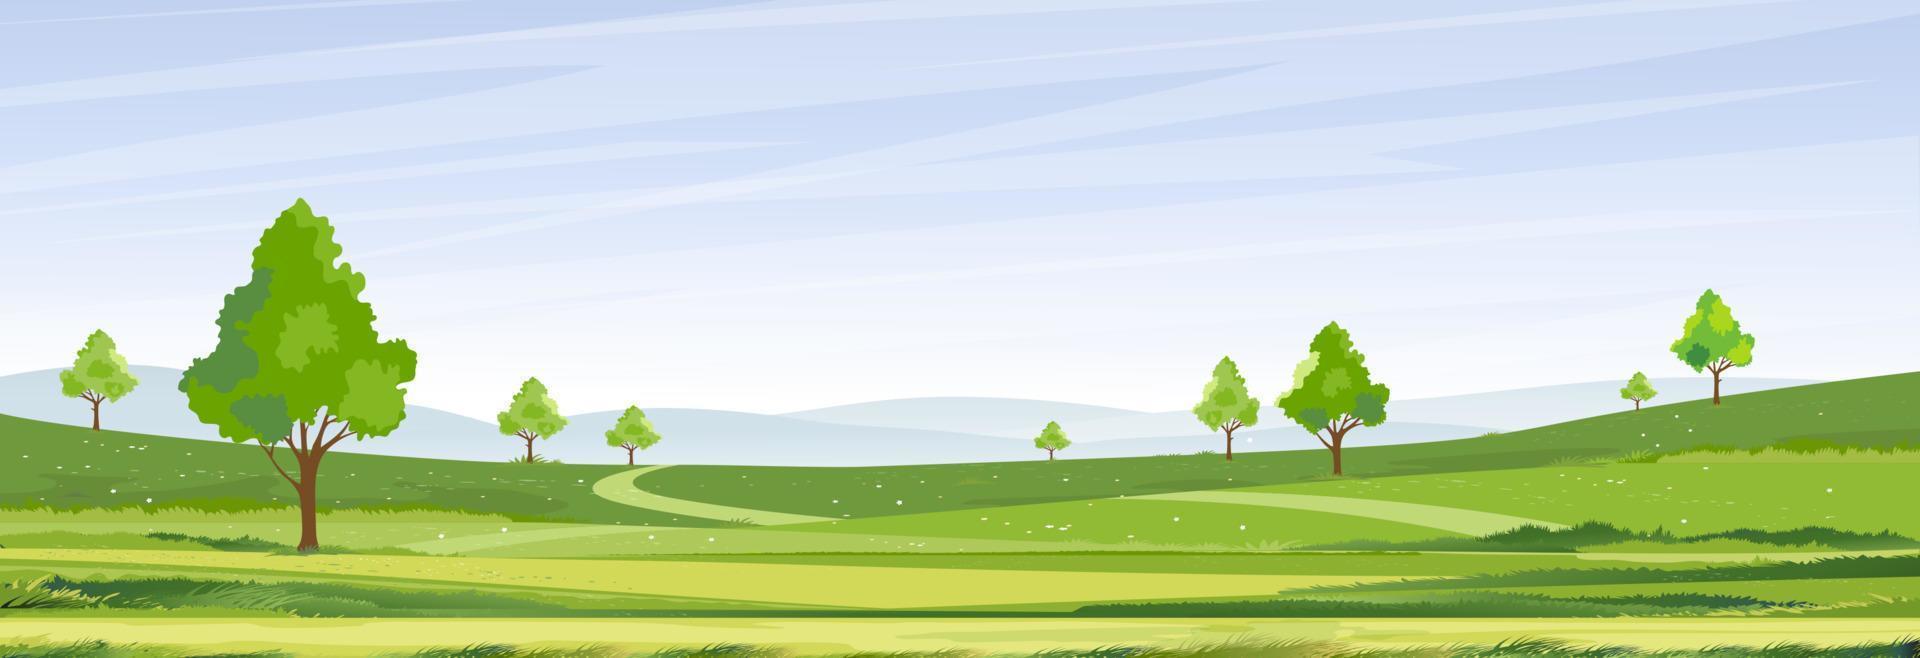 lentetijd, zonnige dag zomer landschap in dorp met groen veld, wolk en blauwe hemel background.rural platteland met berg, grasland, zonlicht in de ochtend, vector natuur landschap cartoon achtergrond